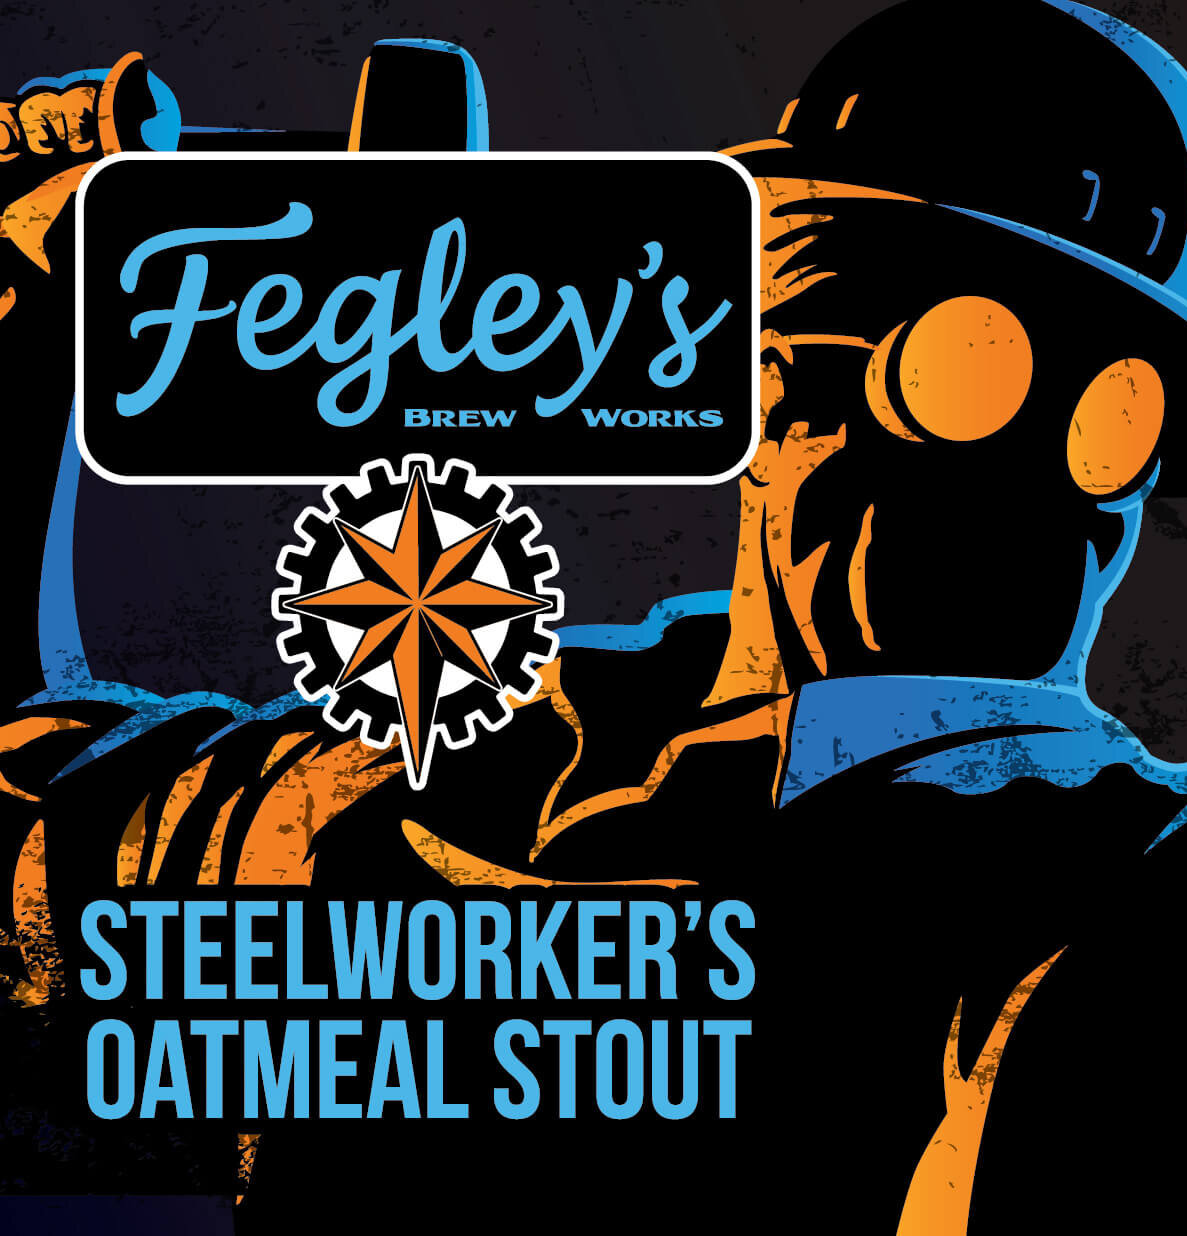 Fegley's Steelworker's Oatmeal Stout